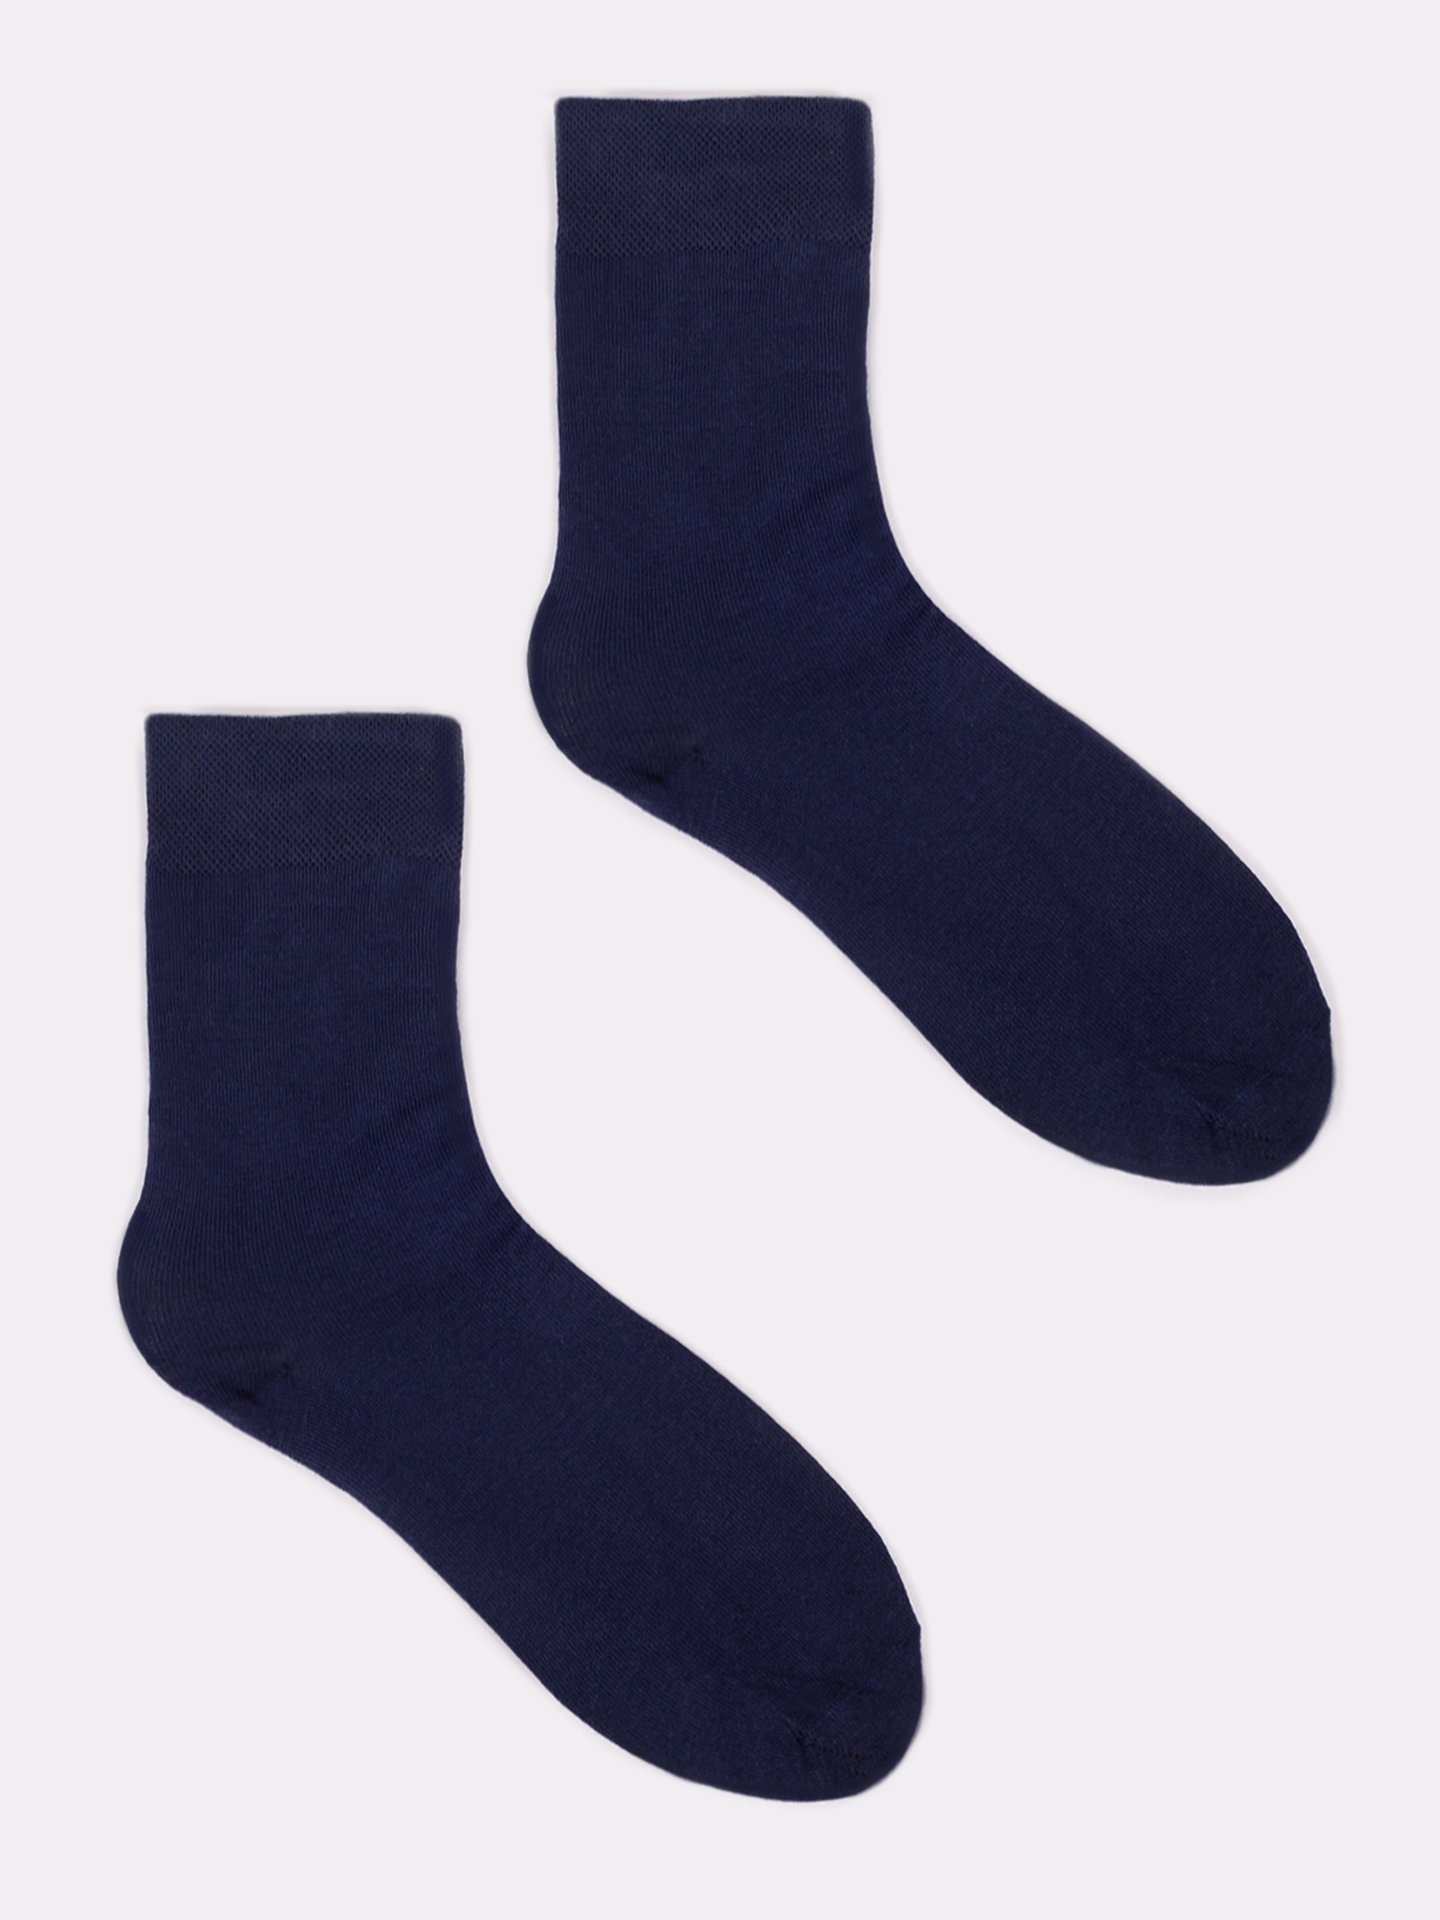 Yoclub Pánské hladké ponožky v námořnické modré barvě, 6 balení SKA-0055F-1900 Navy Blue 39-42